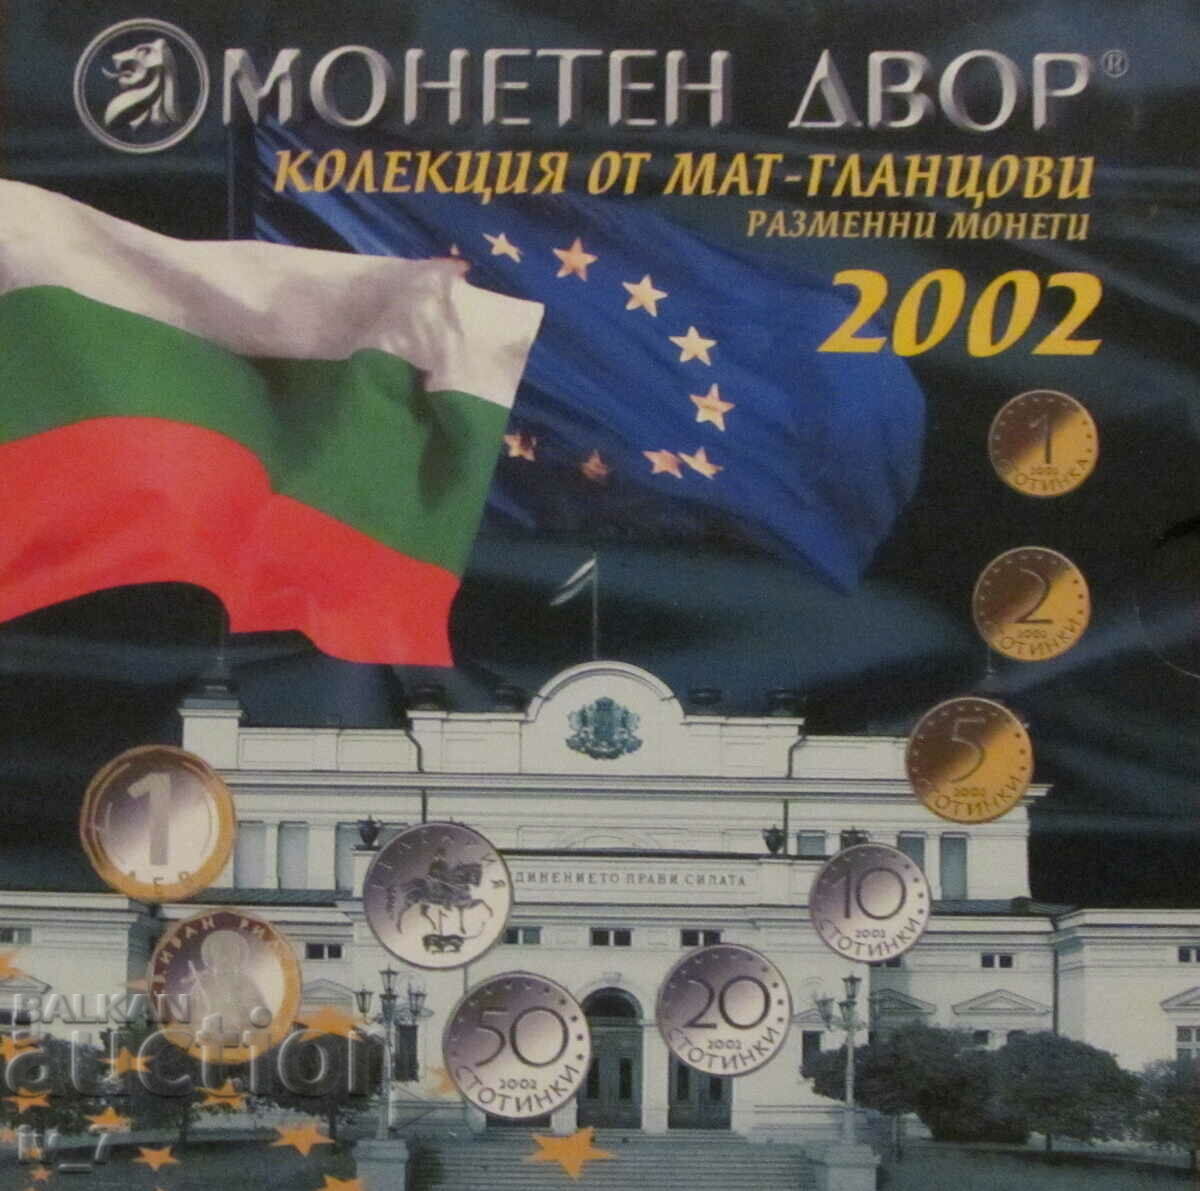 МАТ-ГЛАНЦОВ СЕТ РАЗМЕННИ МОНЕТИ 2002 година